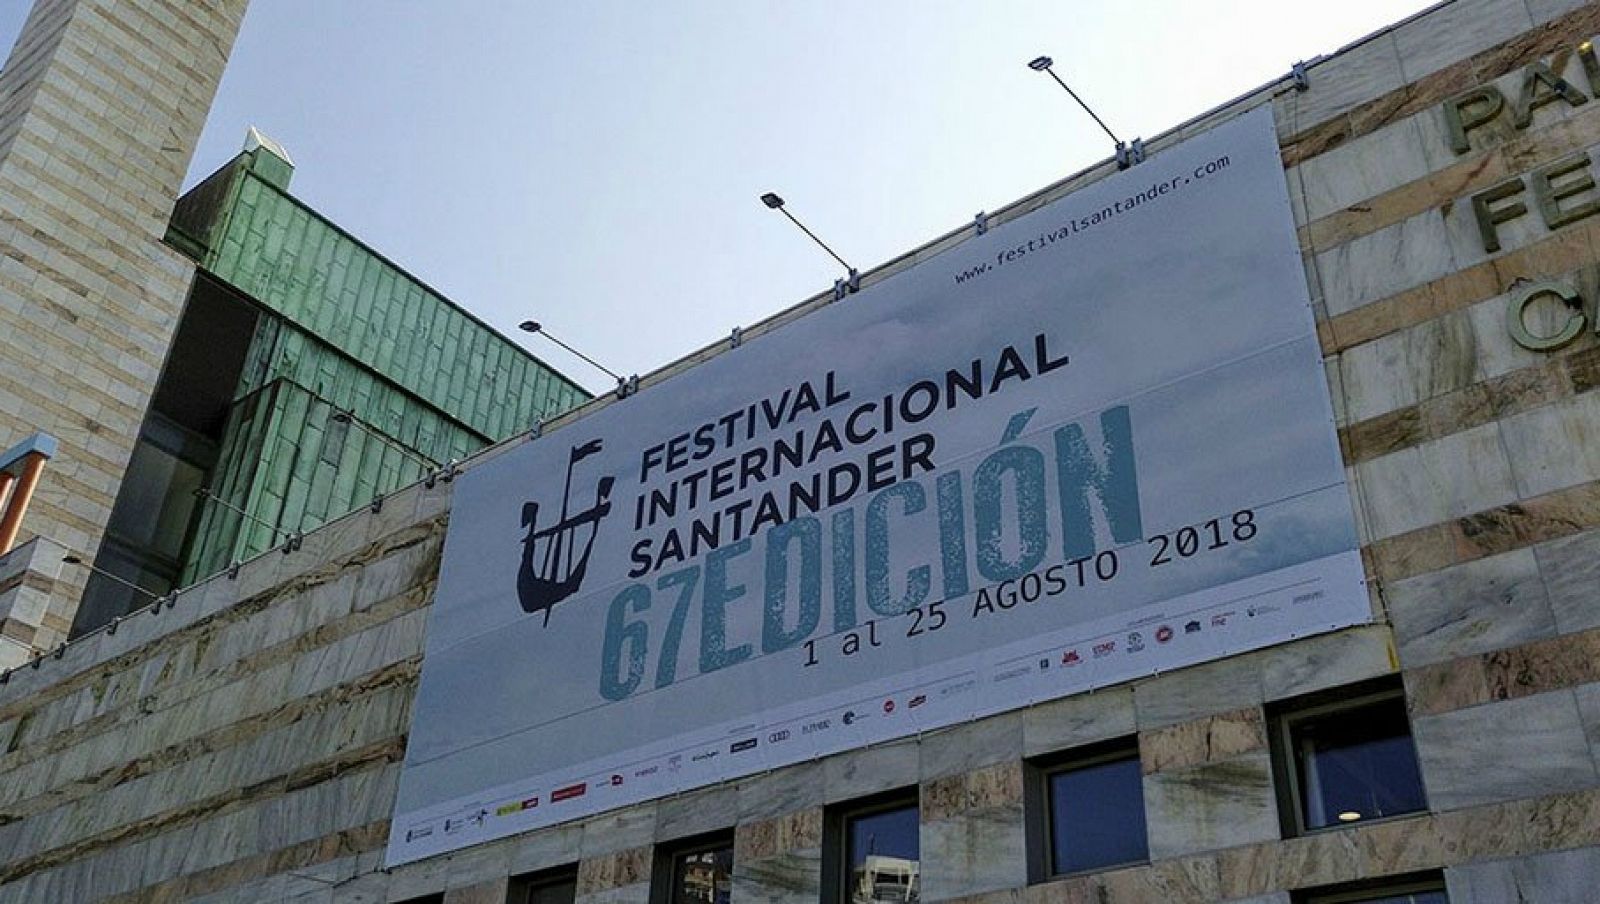 67 Festival Internacional de Santander